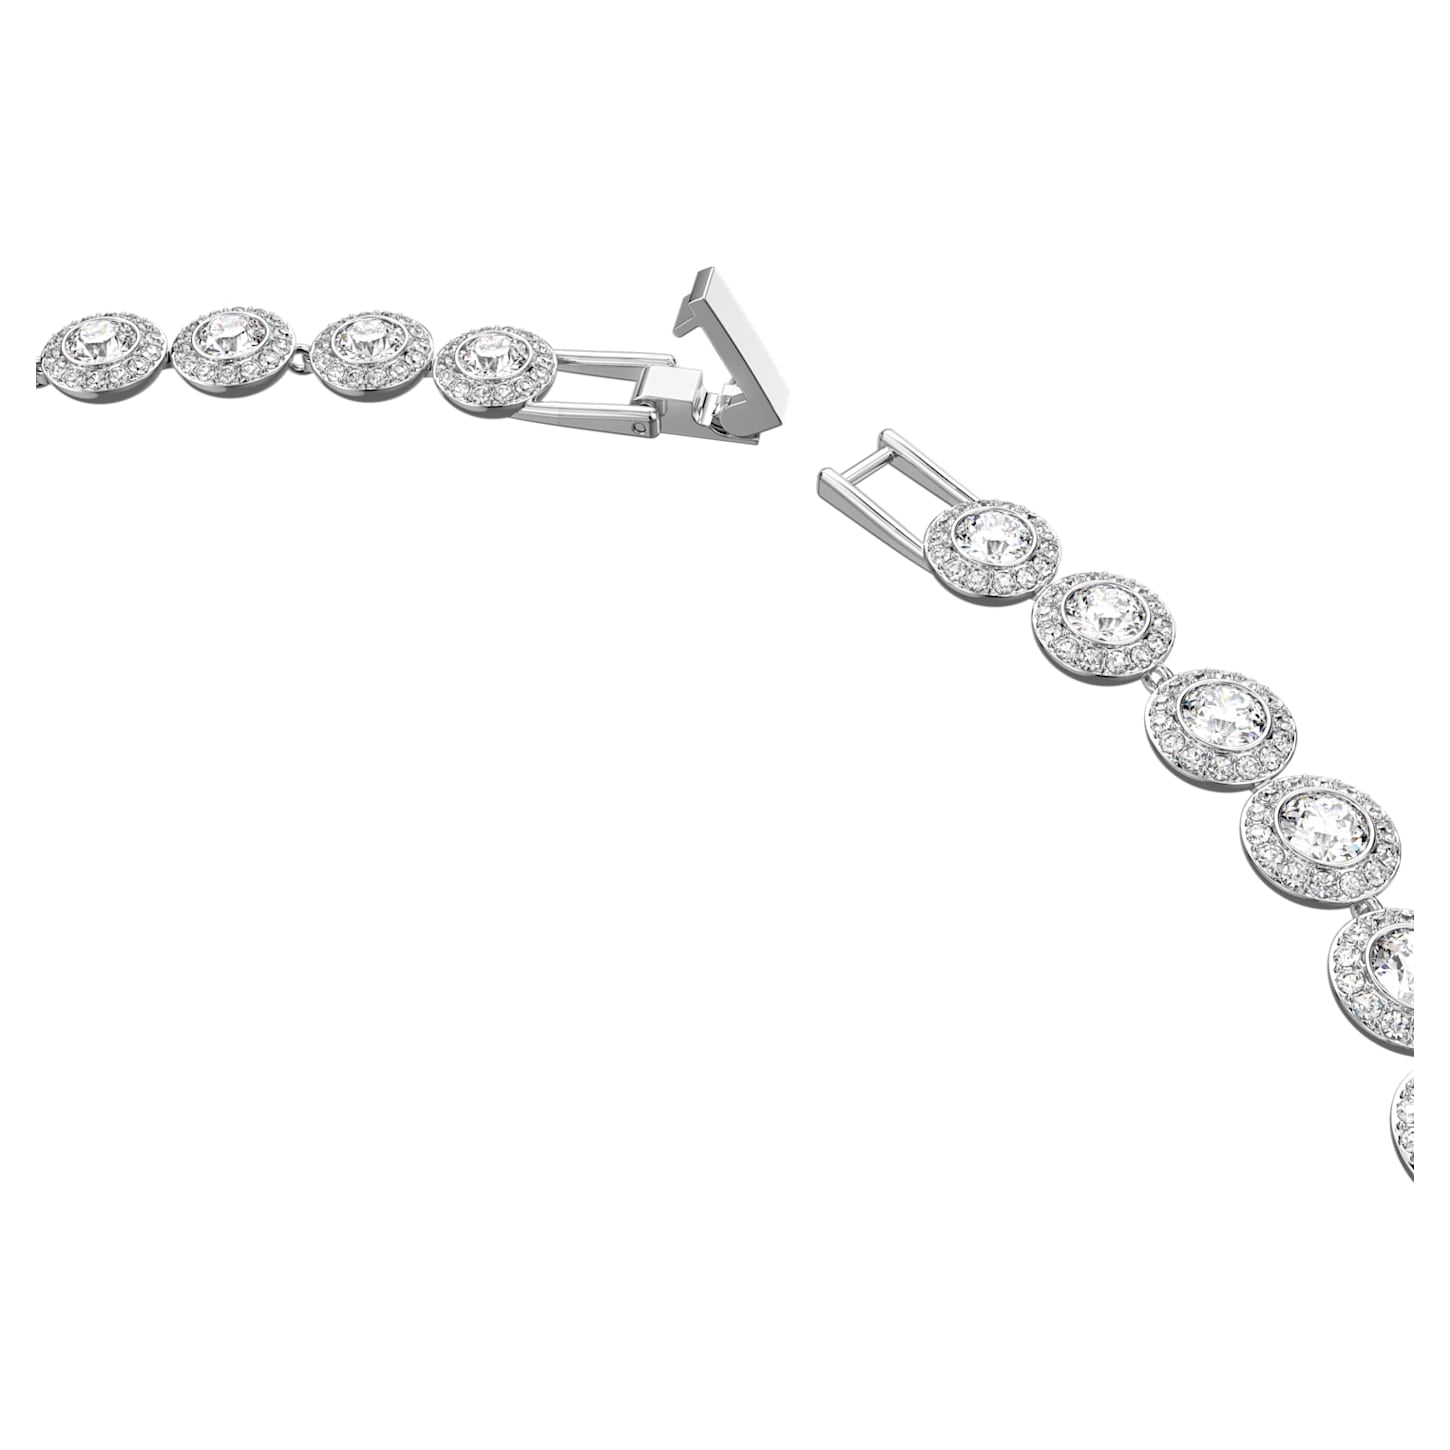 Angelic - Round - White Silver - Necklace - Swarovski